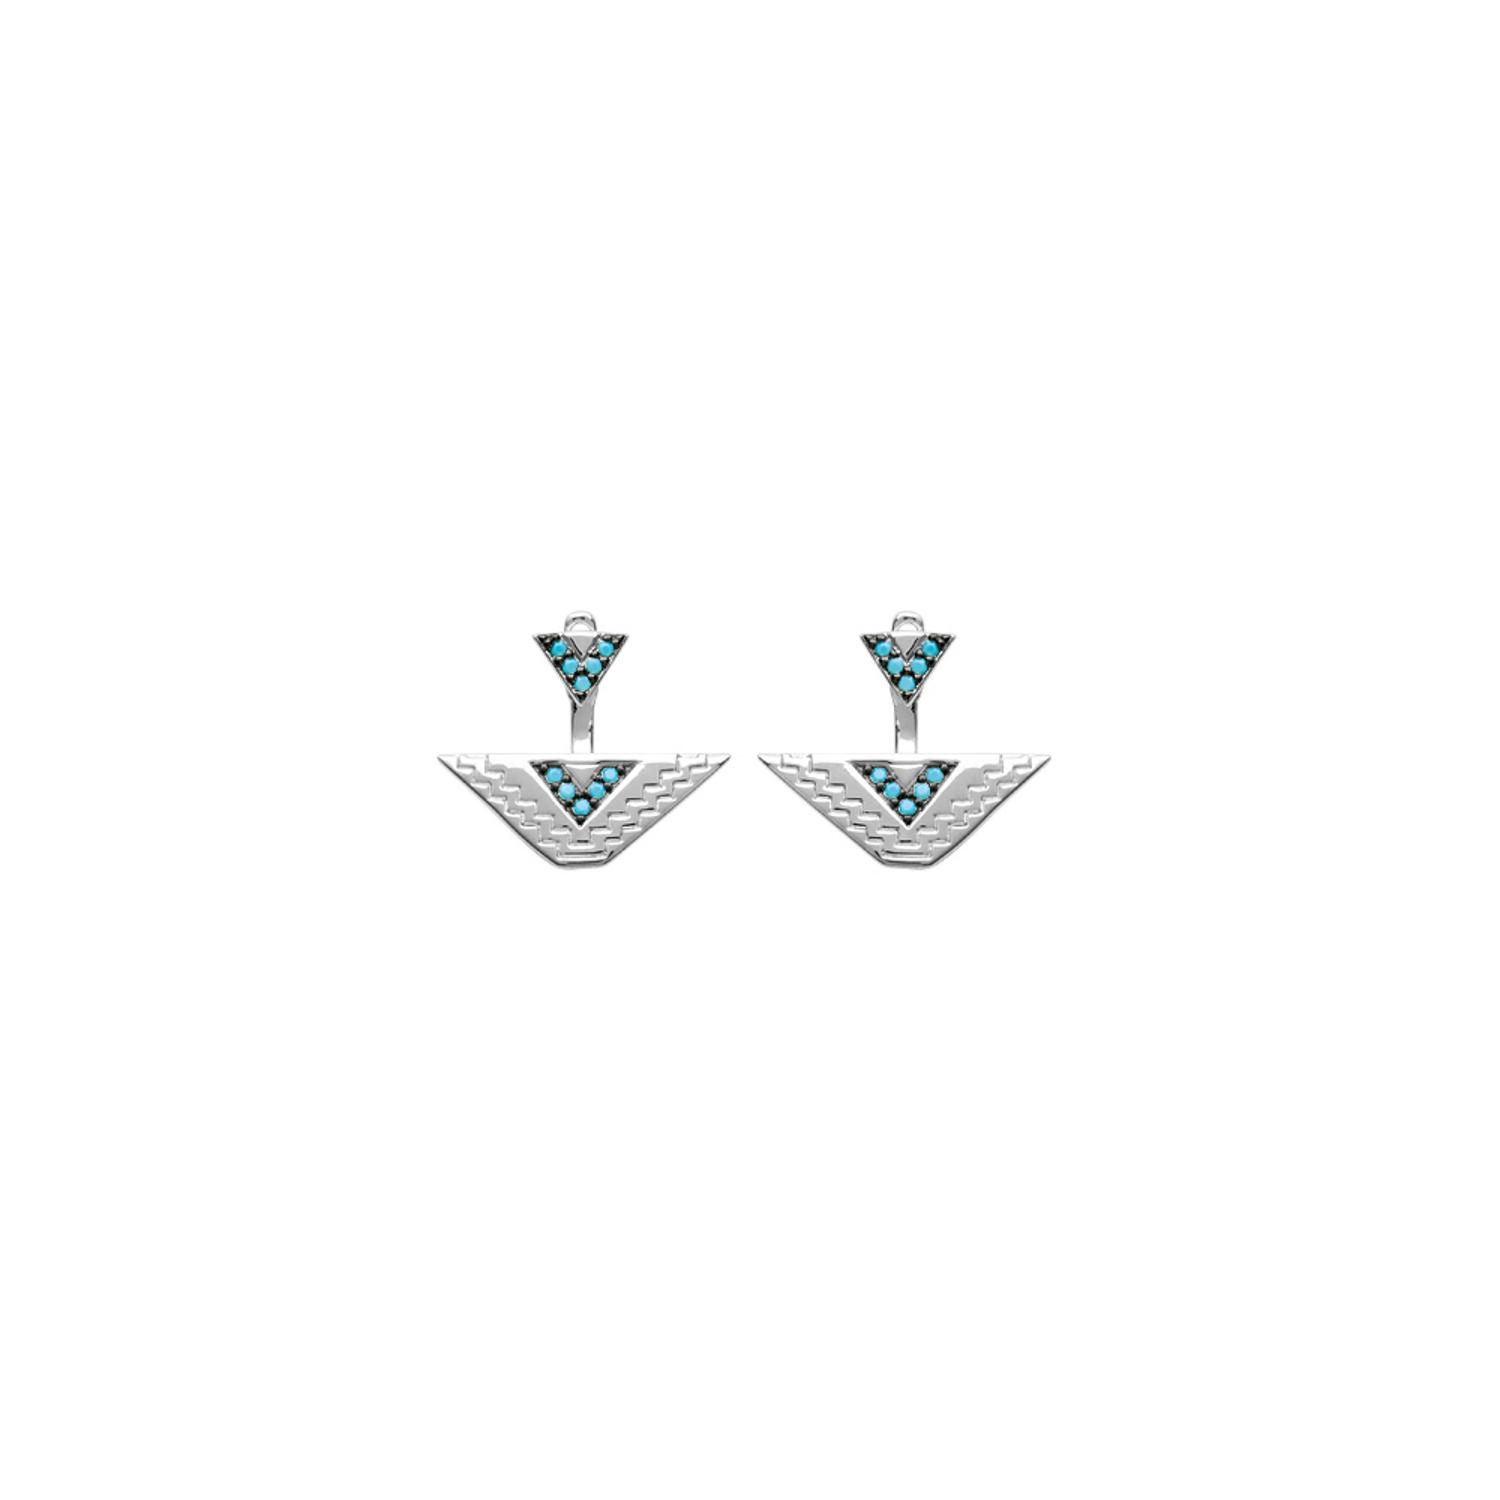 Boucles d'oreilles en argent 925/000 rhodié et pierre synthétiques turquoise. Pendantes Triangle Turquoise  Adolescent Adulte Femme Fille Indémodable 